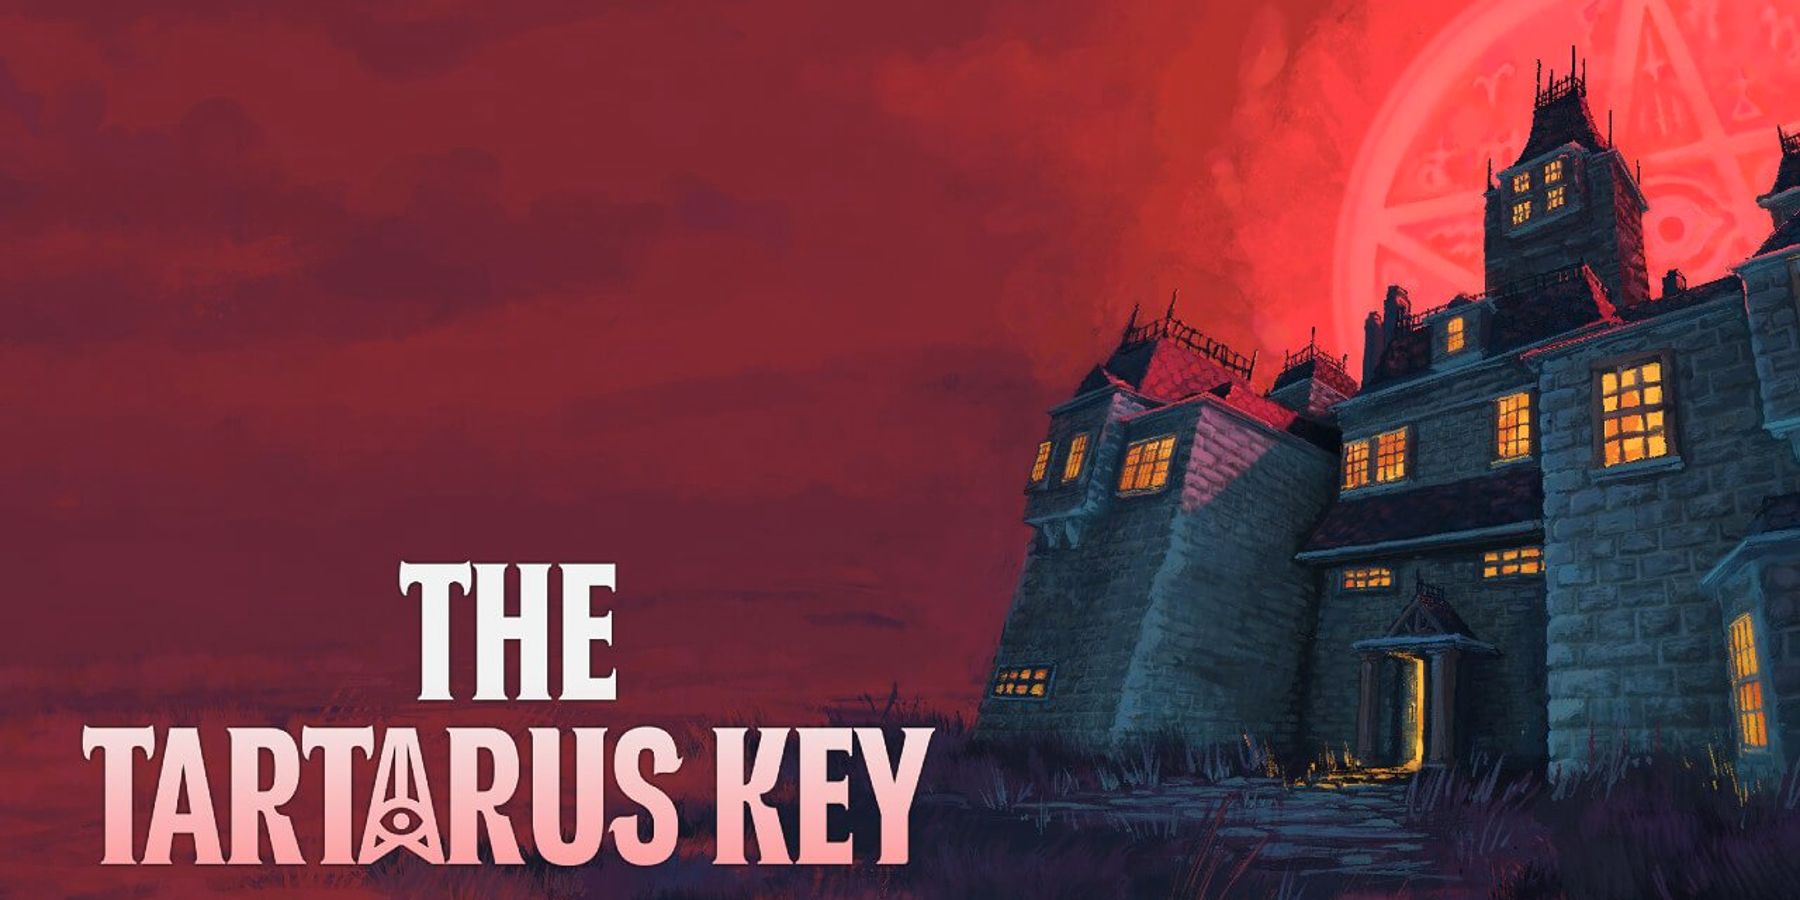 PS1-Horrorspiel The Tartarus Key für Nintendo Switch angekündigt